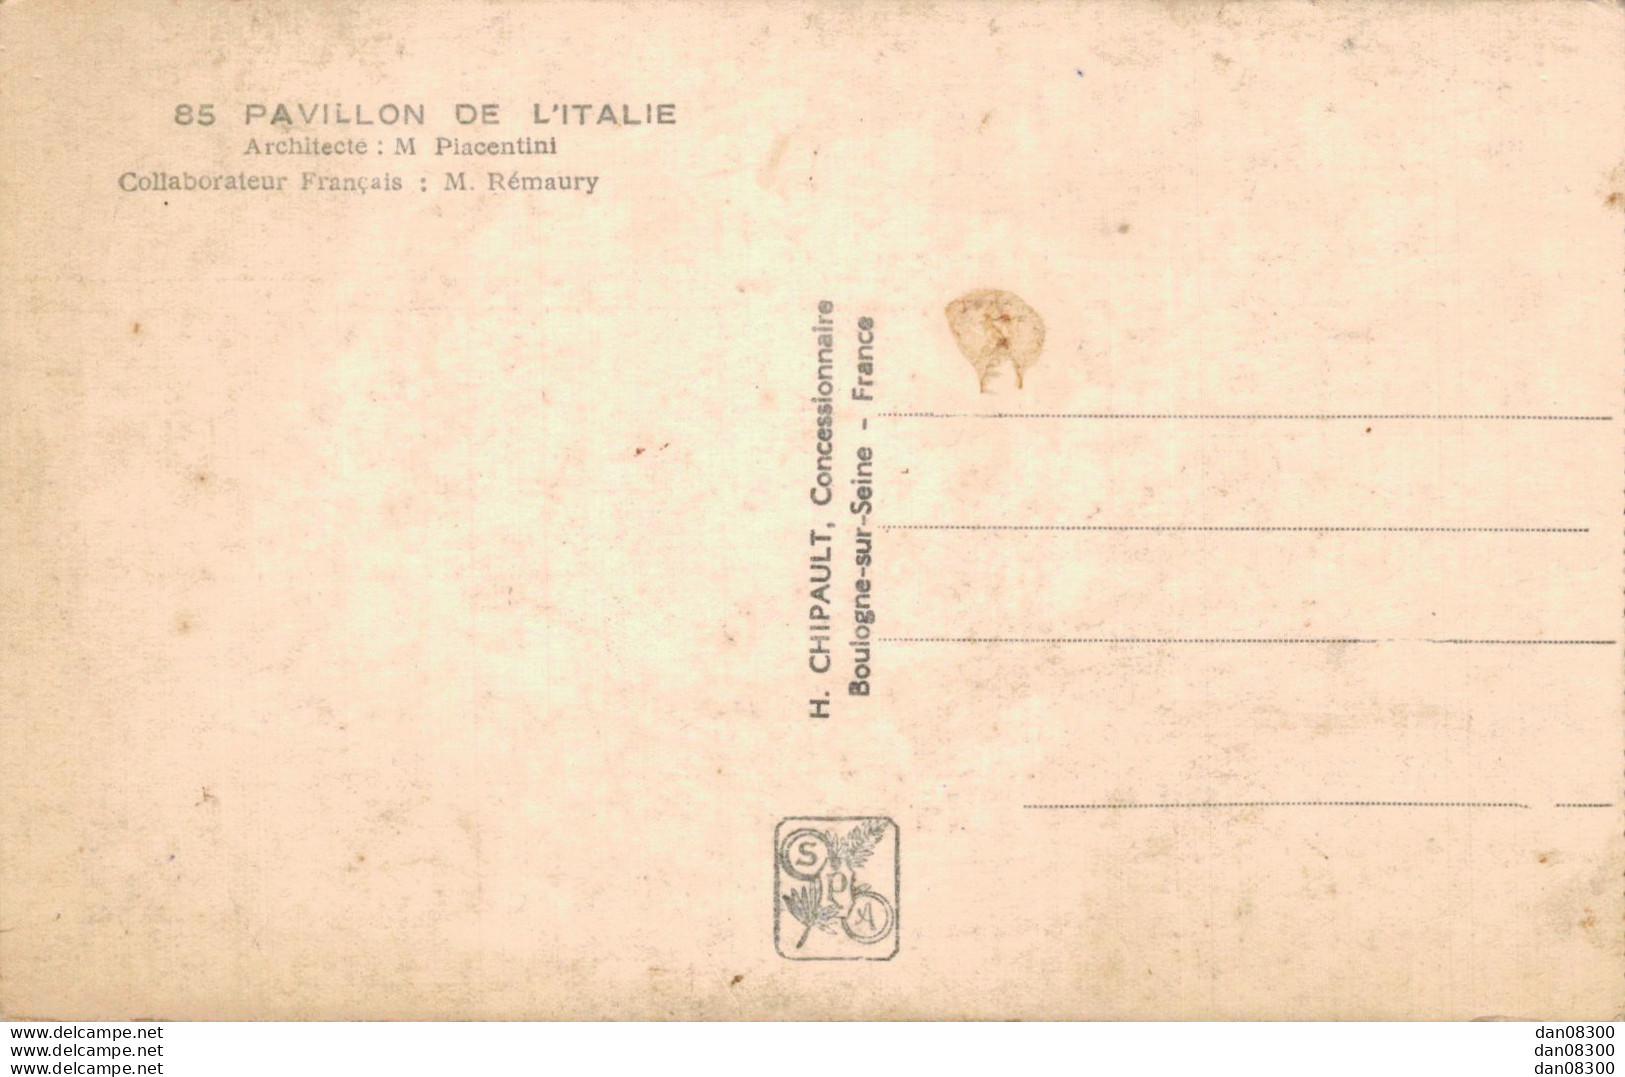 75 EXPOSITION INTERNATIONALE PARIS 1937 PAVILLON DE L'ITALIE - Ausstellungen